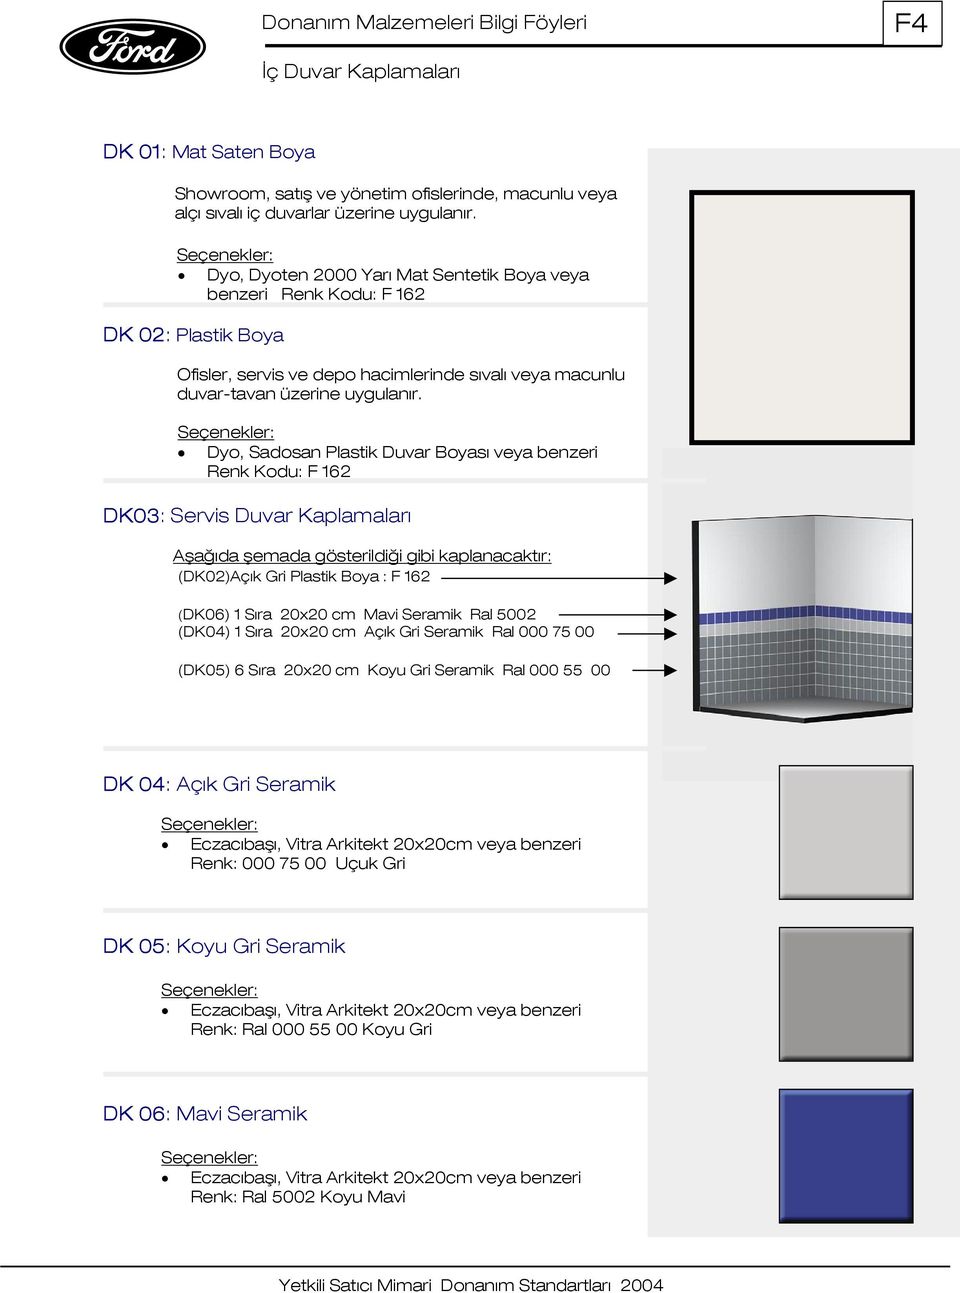 Dyo, Sadosan Plastik Duvar Boyası veya benzeri Renk Kodu: F 162 DK03: Servis Duvar Kaplamaları Aşağıda şemada gösterildiği gibi kaplanacaktır: (DK02)Açık Gri Plastik Boya : F 162 (DK06) 1 Sıra 20x20